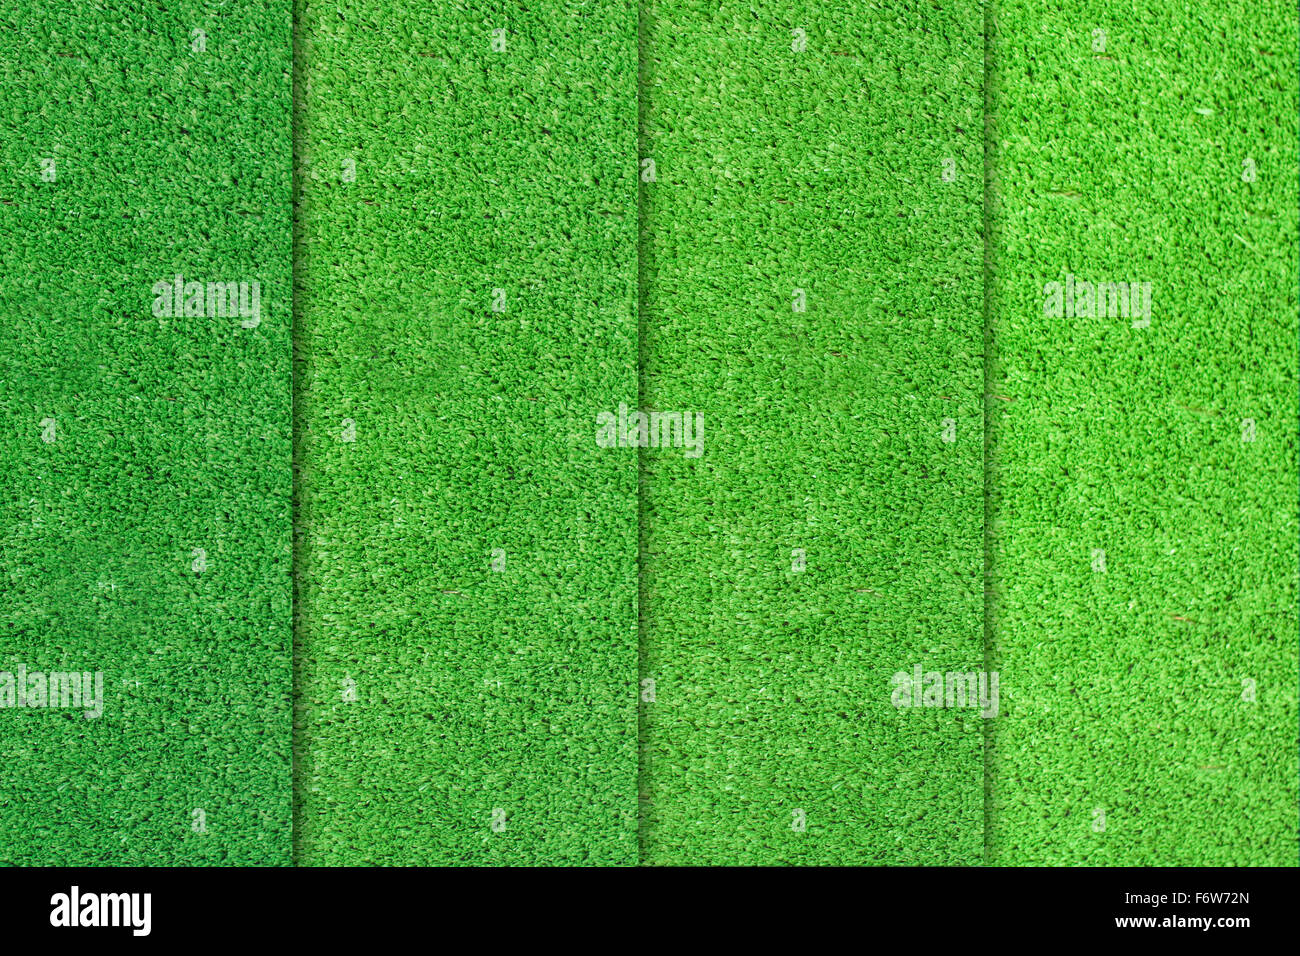 Les différences de couleur de l'herbe verte Banque D'Images